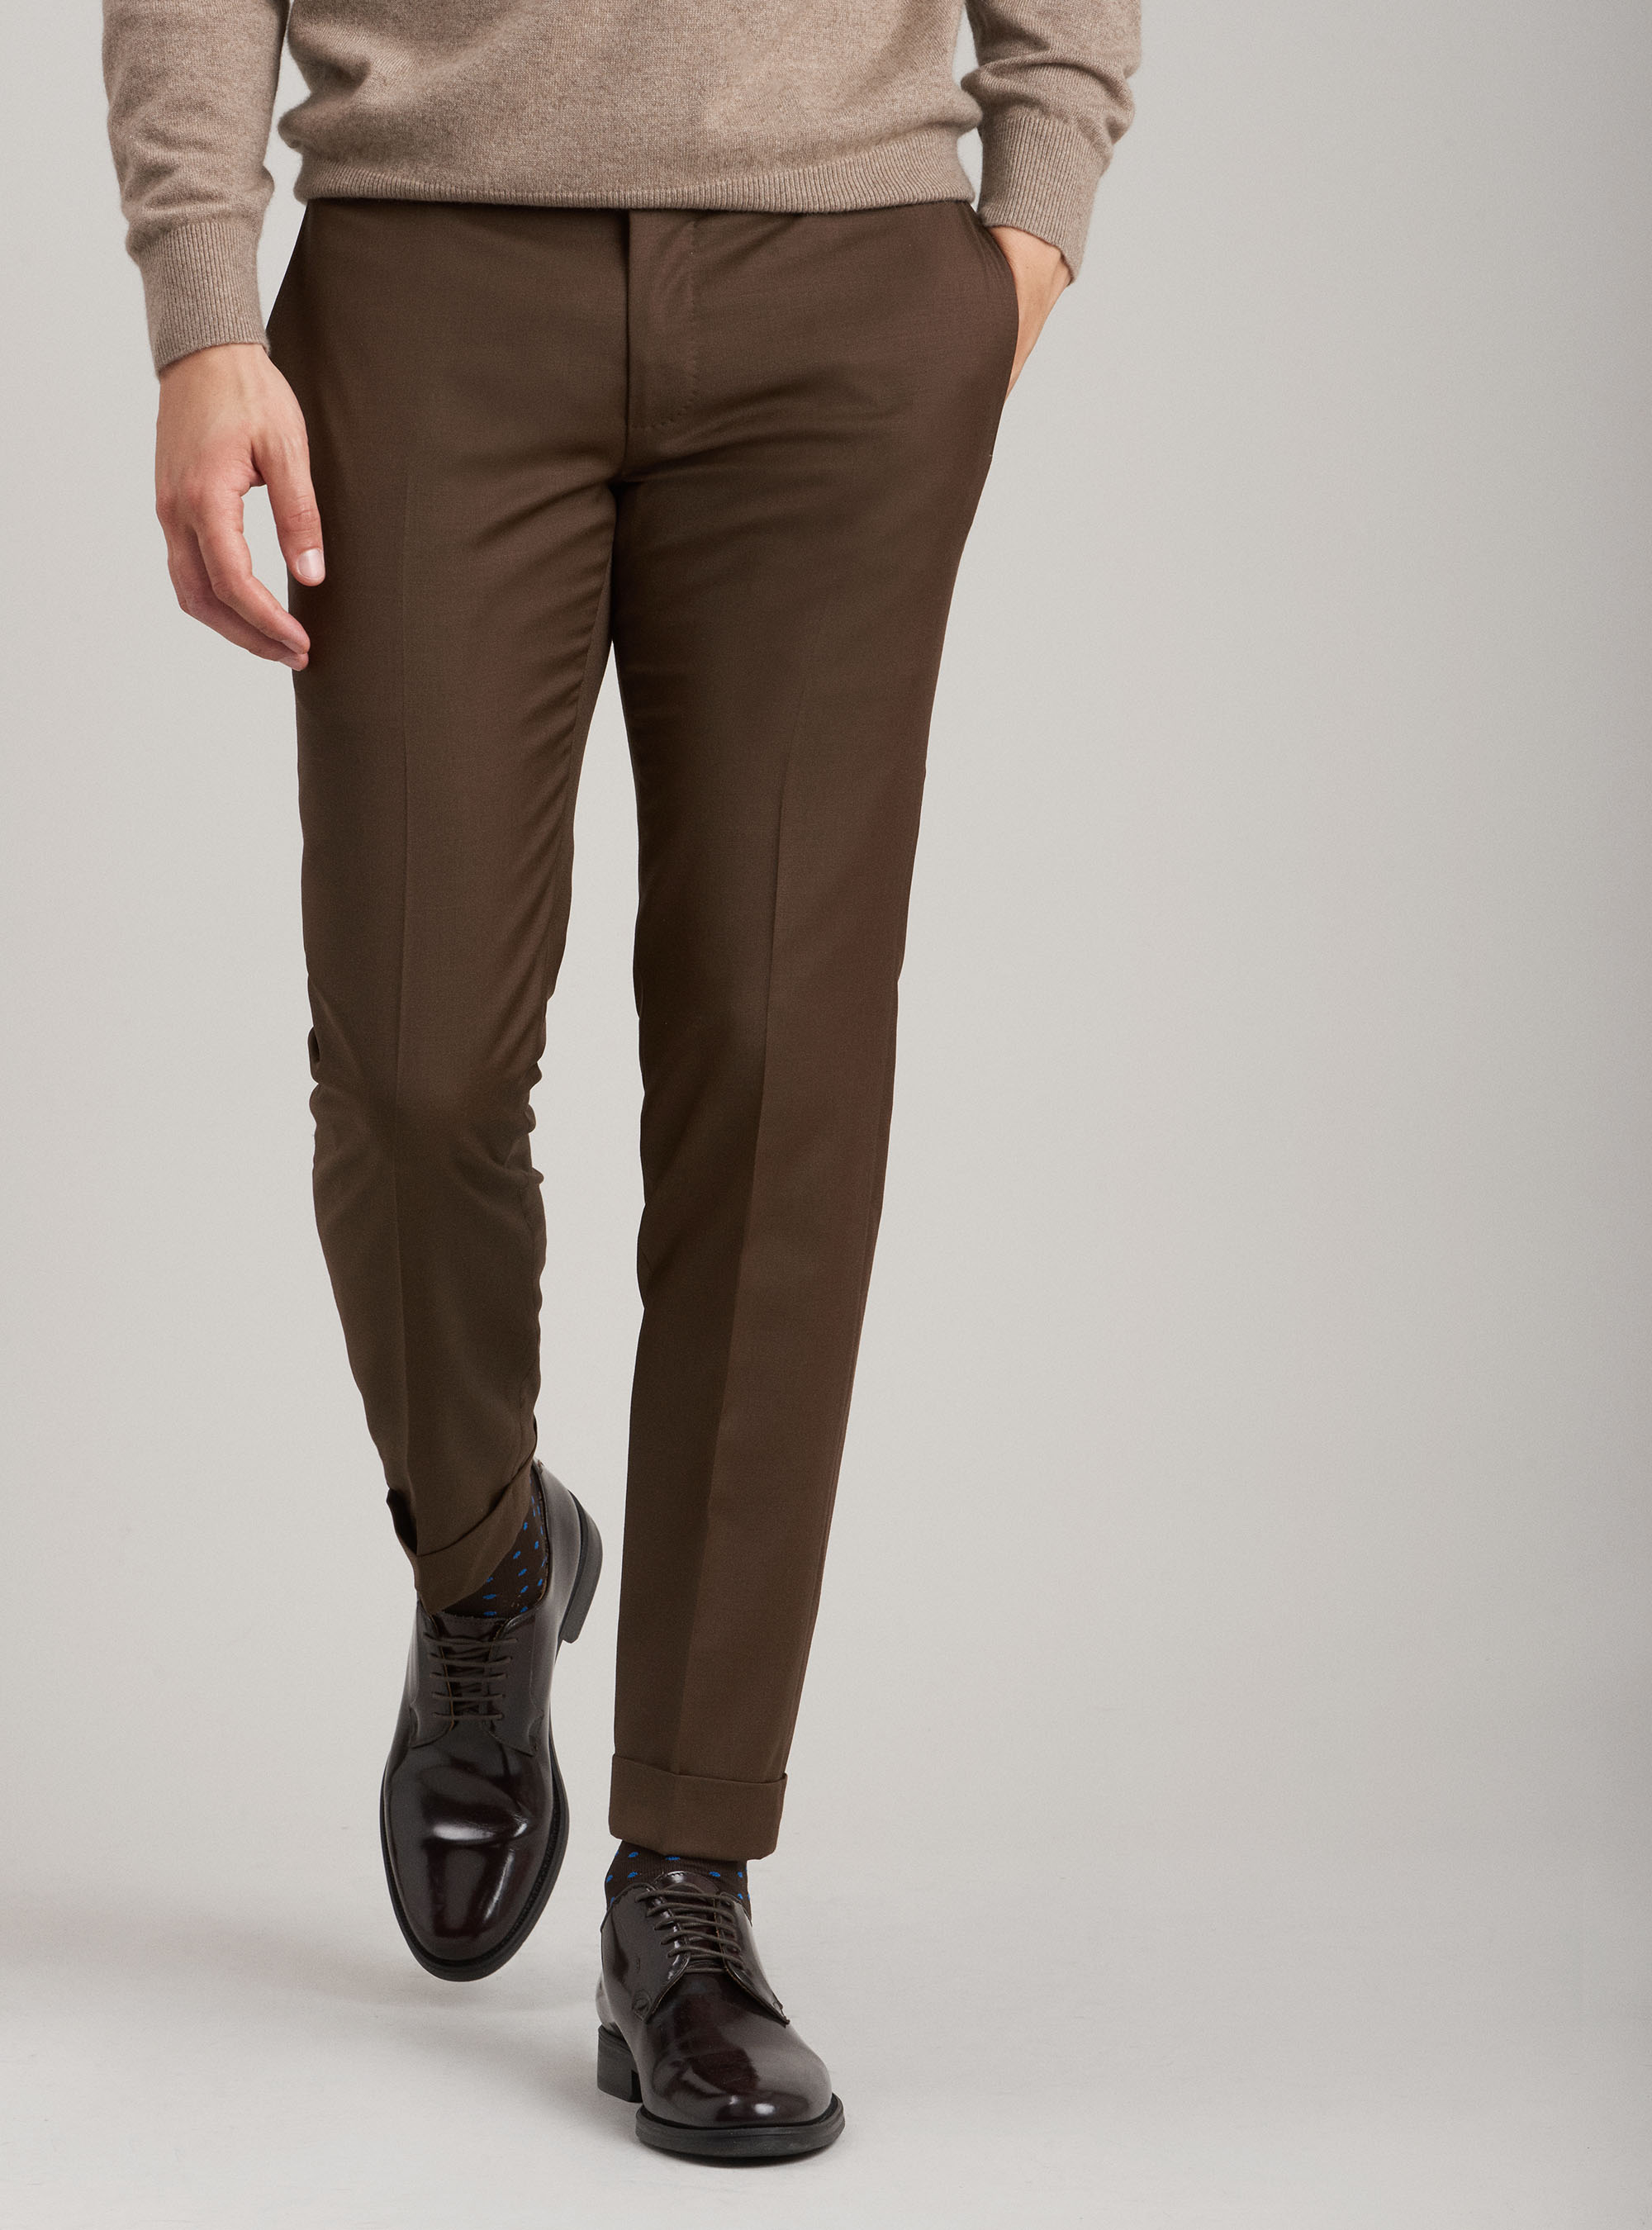 Gutteridge - pantaloni per abito in fresco lana super fine 120's, unisex, tabacco, taglia: 56